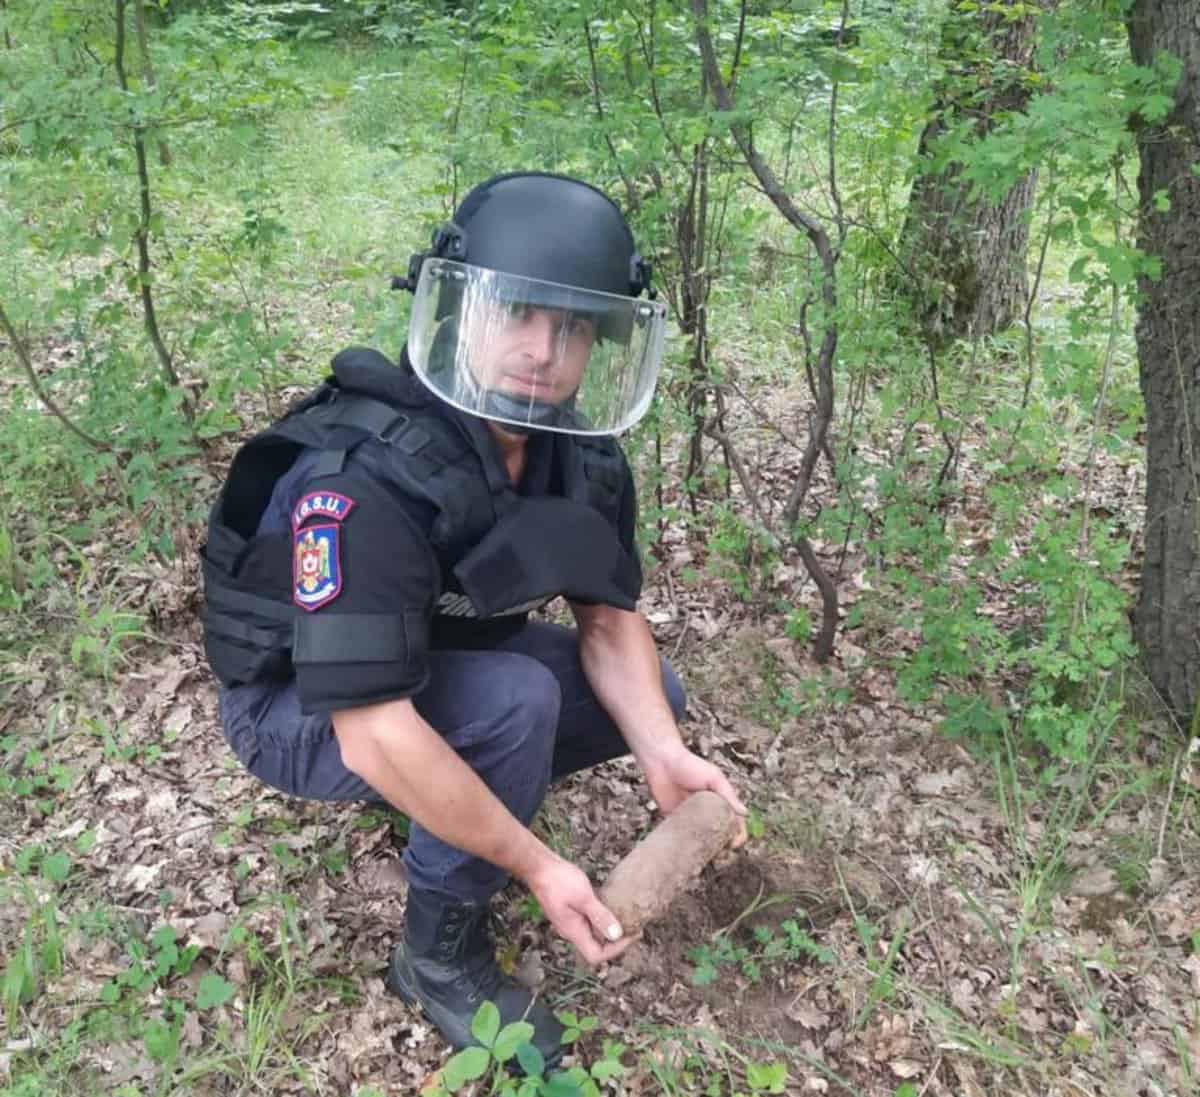 muniție neexplodată găsită în pădure la poplaca - pompierii: „nu le atingeți”